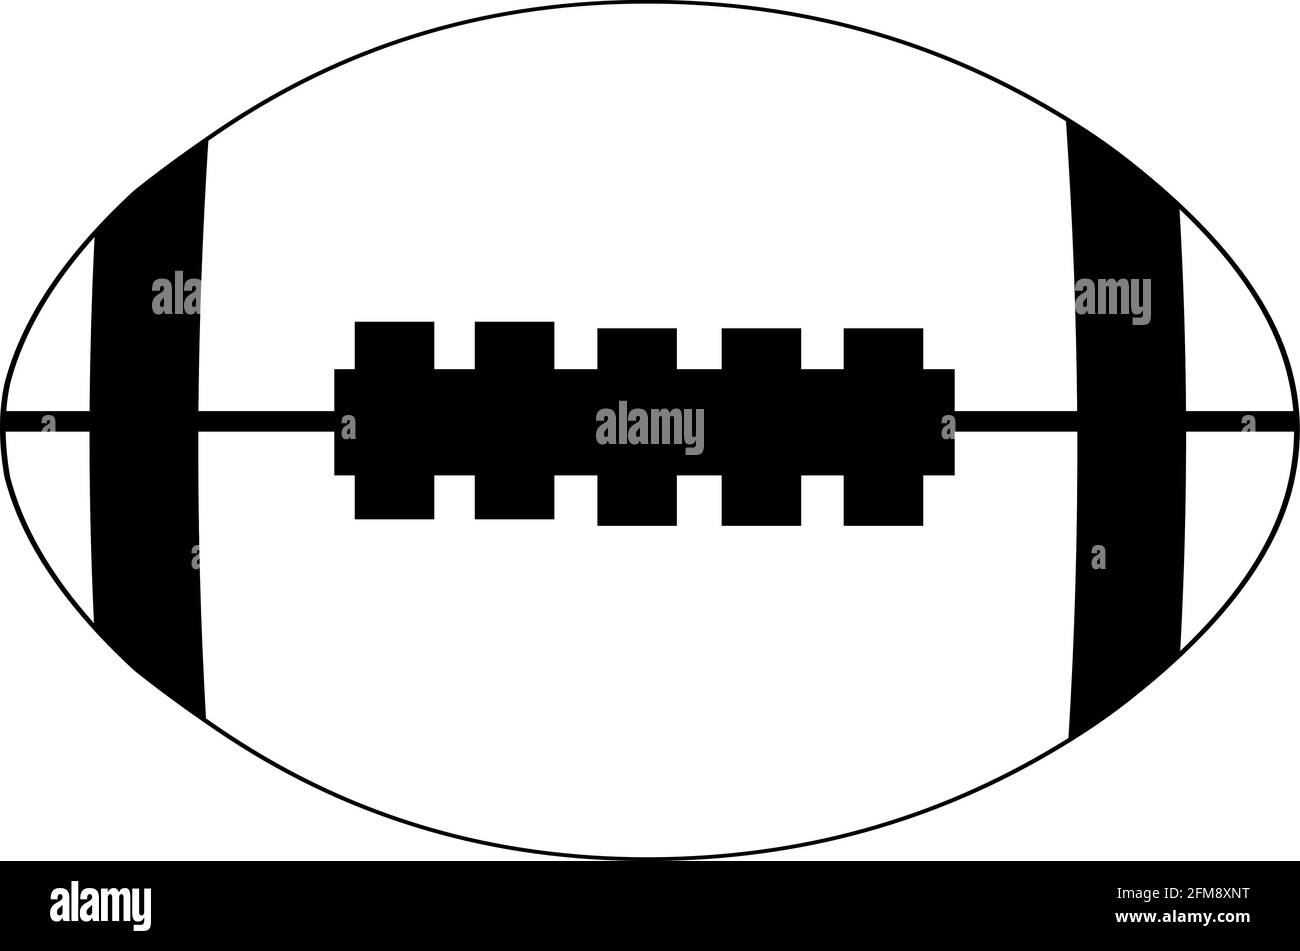 Vektor schwarz-weiß Illustration von Rugby Ball oder american Fußball Stock Vektor